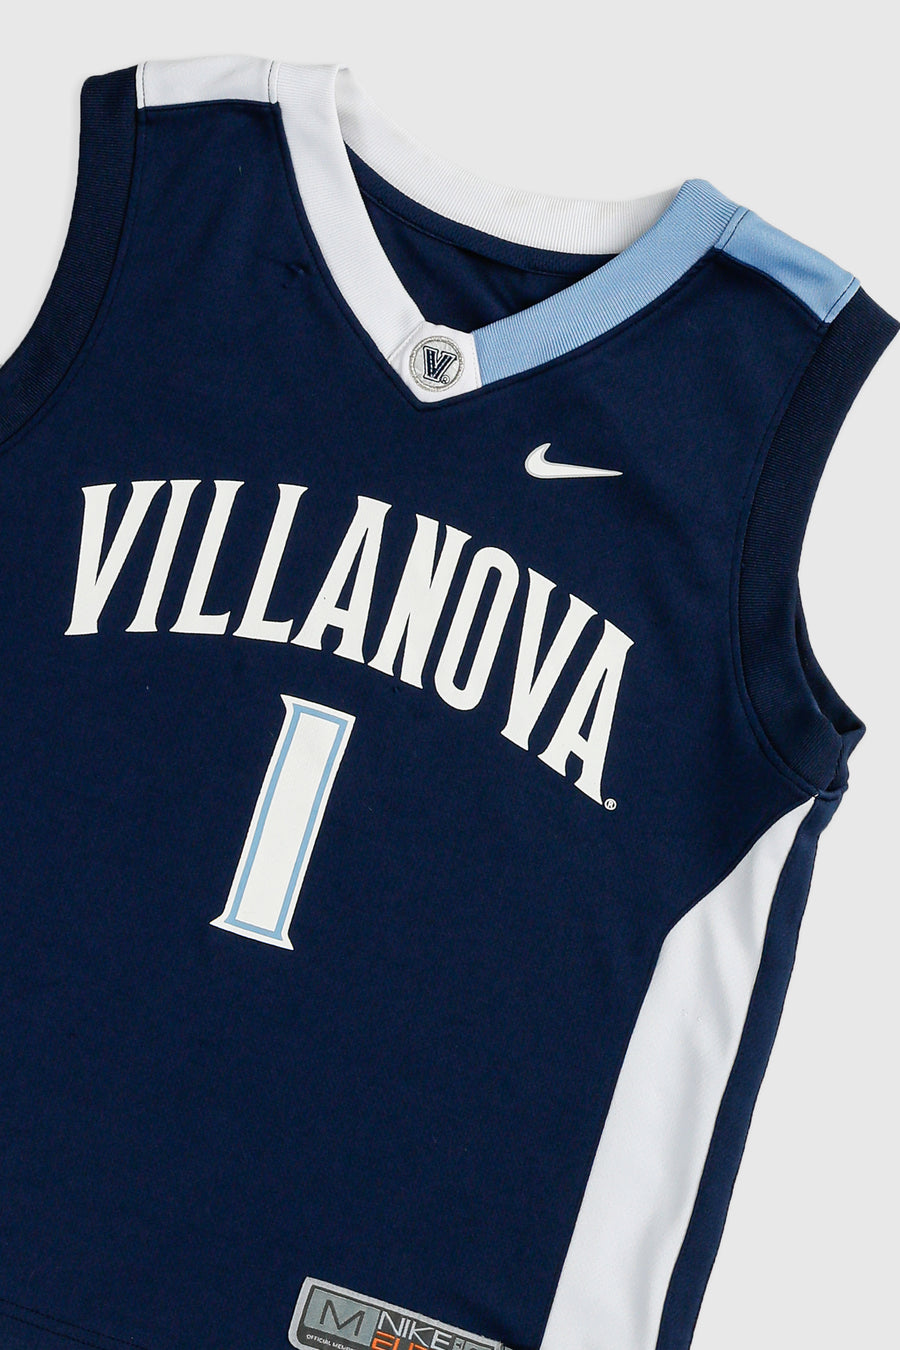 Vintage Villanova NCAA Jersey - Women's M